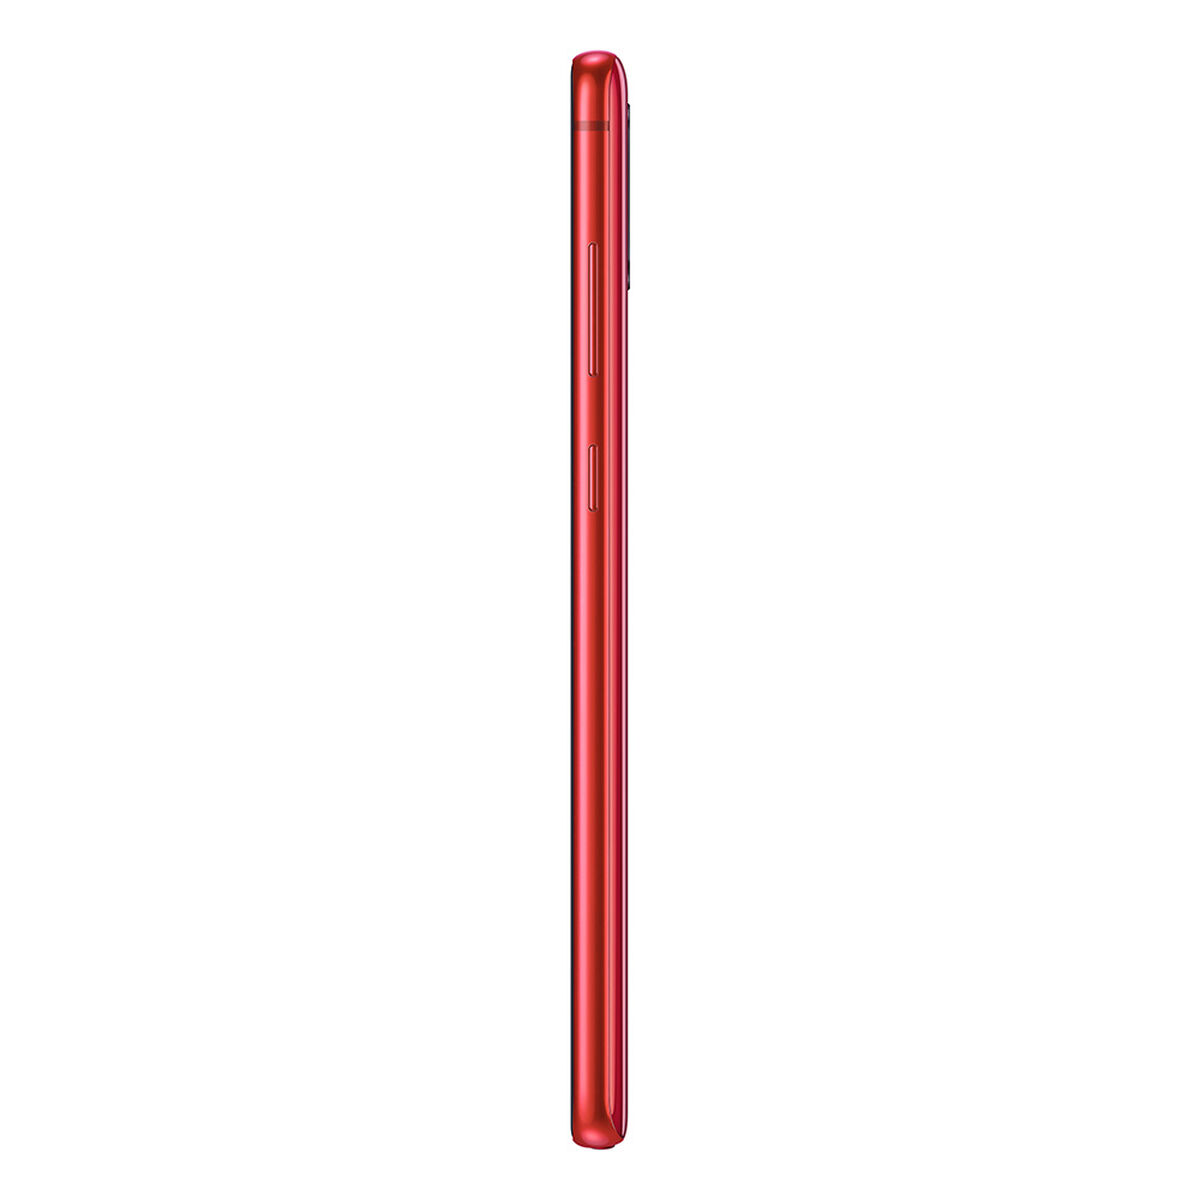 Celular Samsung Note 10 Lite 128GB 6,7" Rojo Liberado